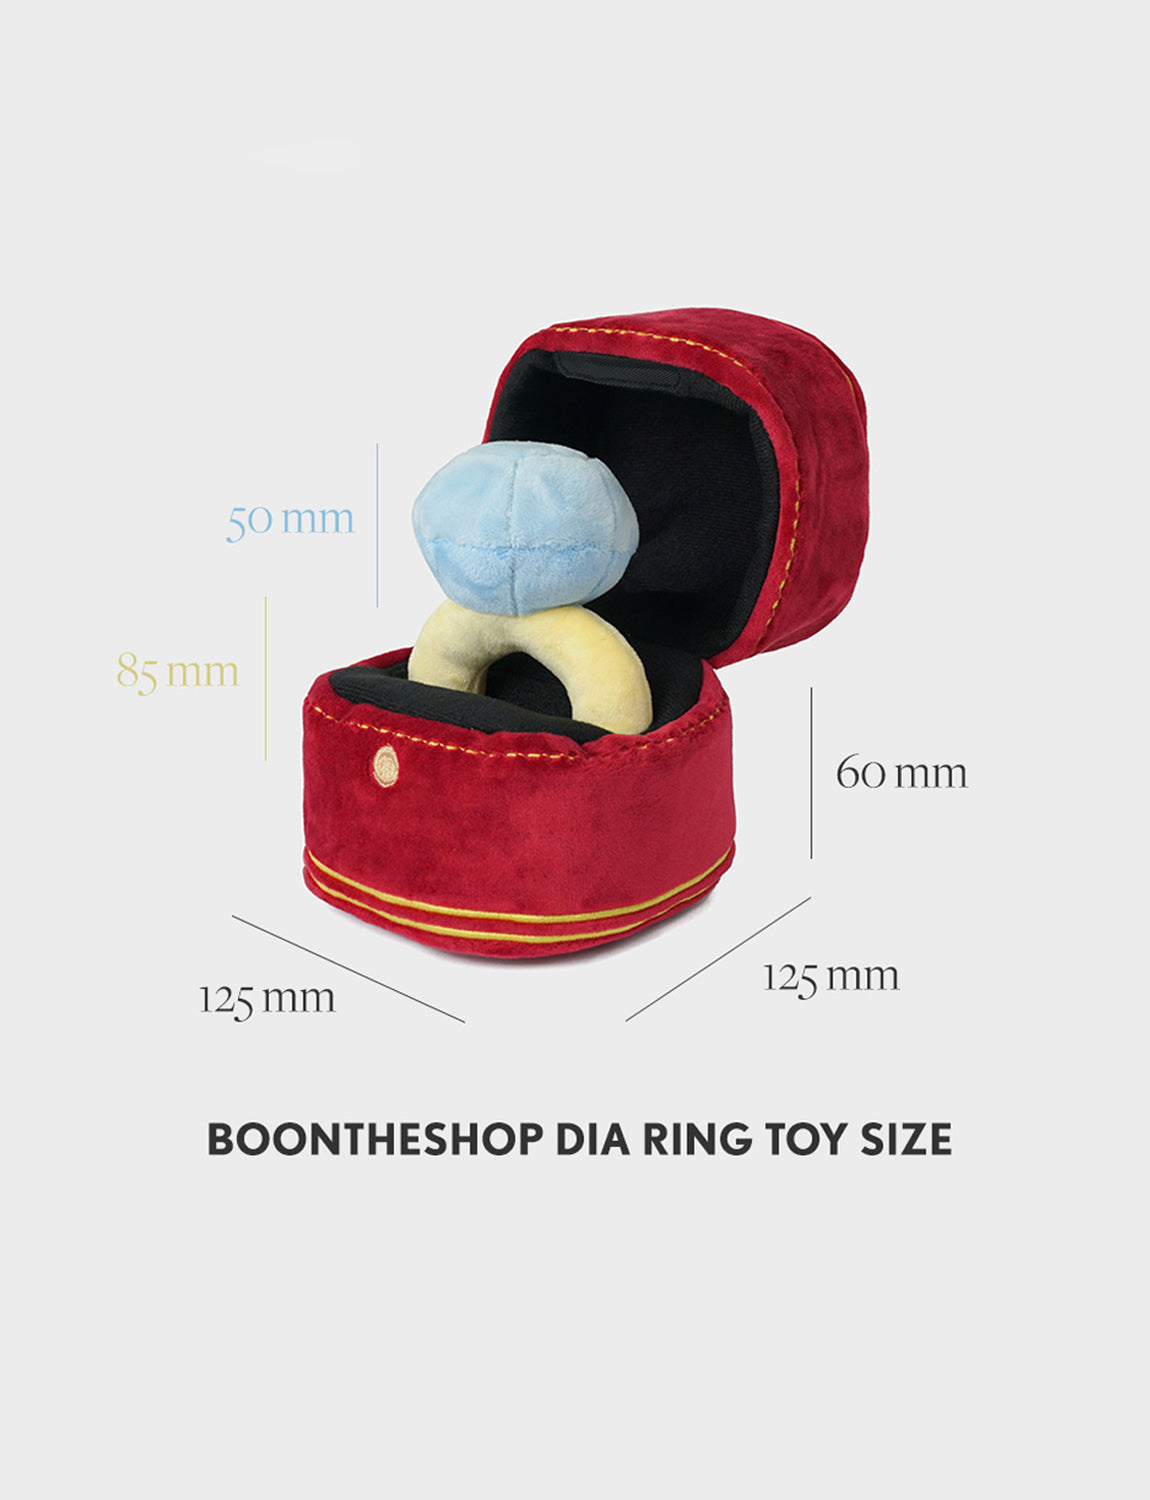 Diamond Ring Nosework Dog Toy